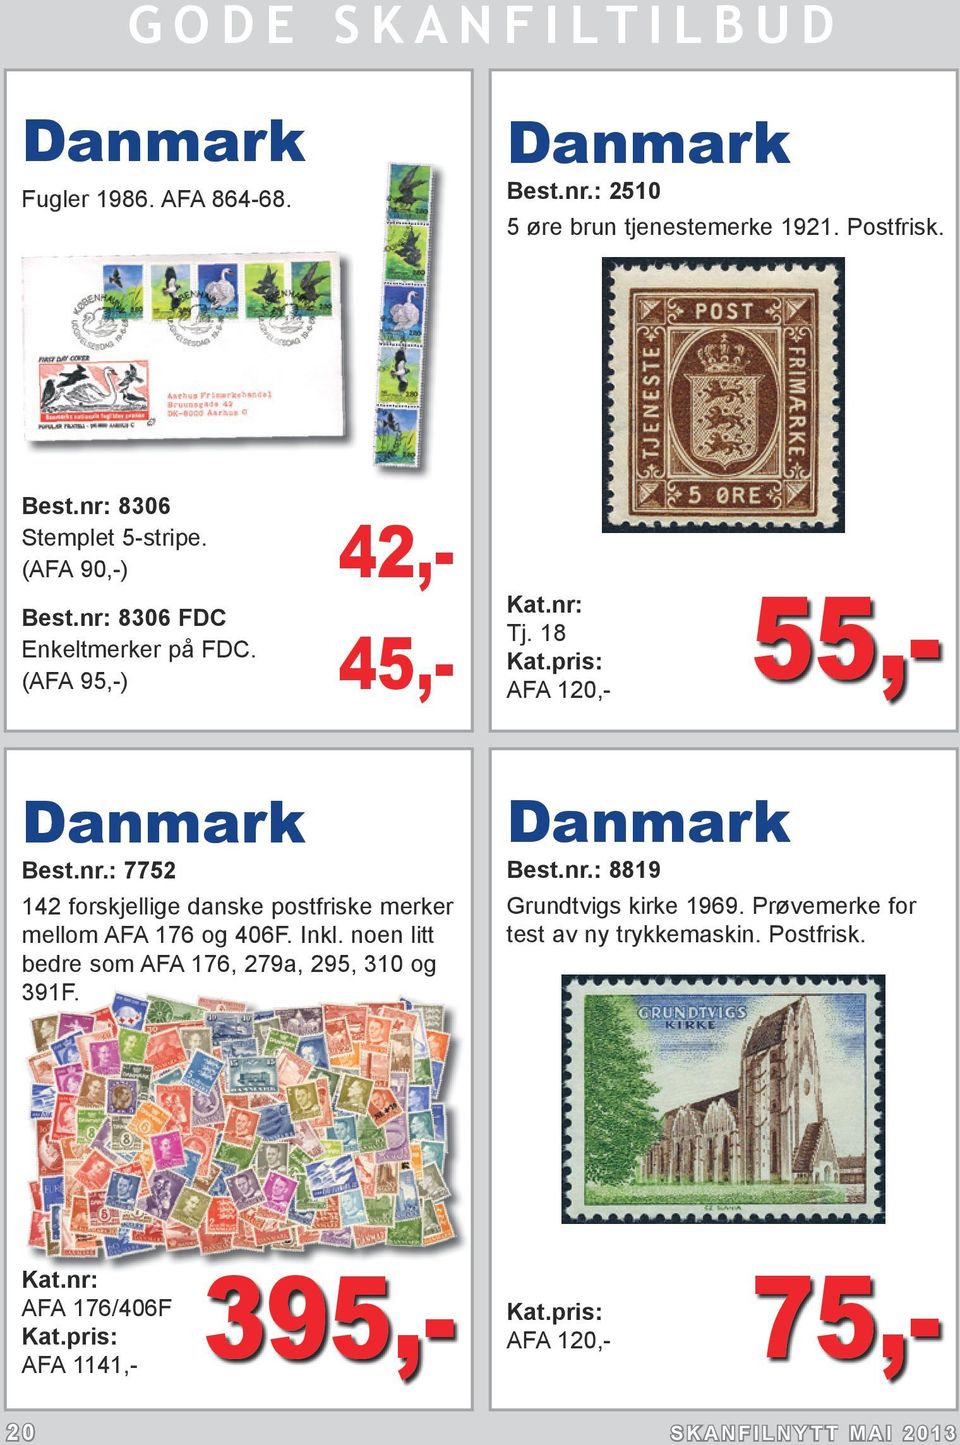 Inkl. noen litt bedre som AFA 176, 279a, 295, 310 og 391F. Danmark Best.nr.: 8819 Grundtvigs kirke 1969.